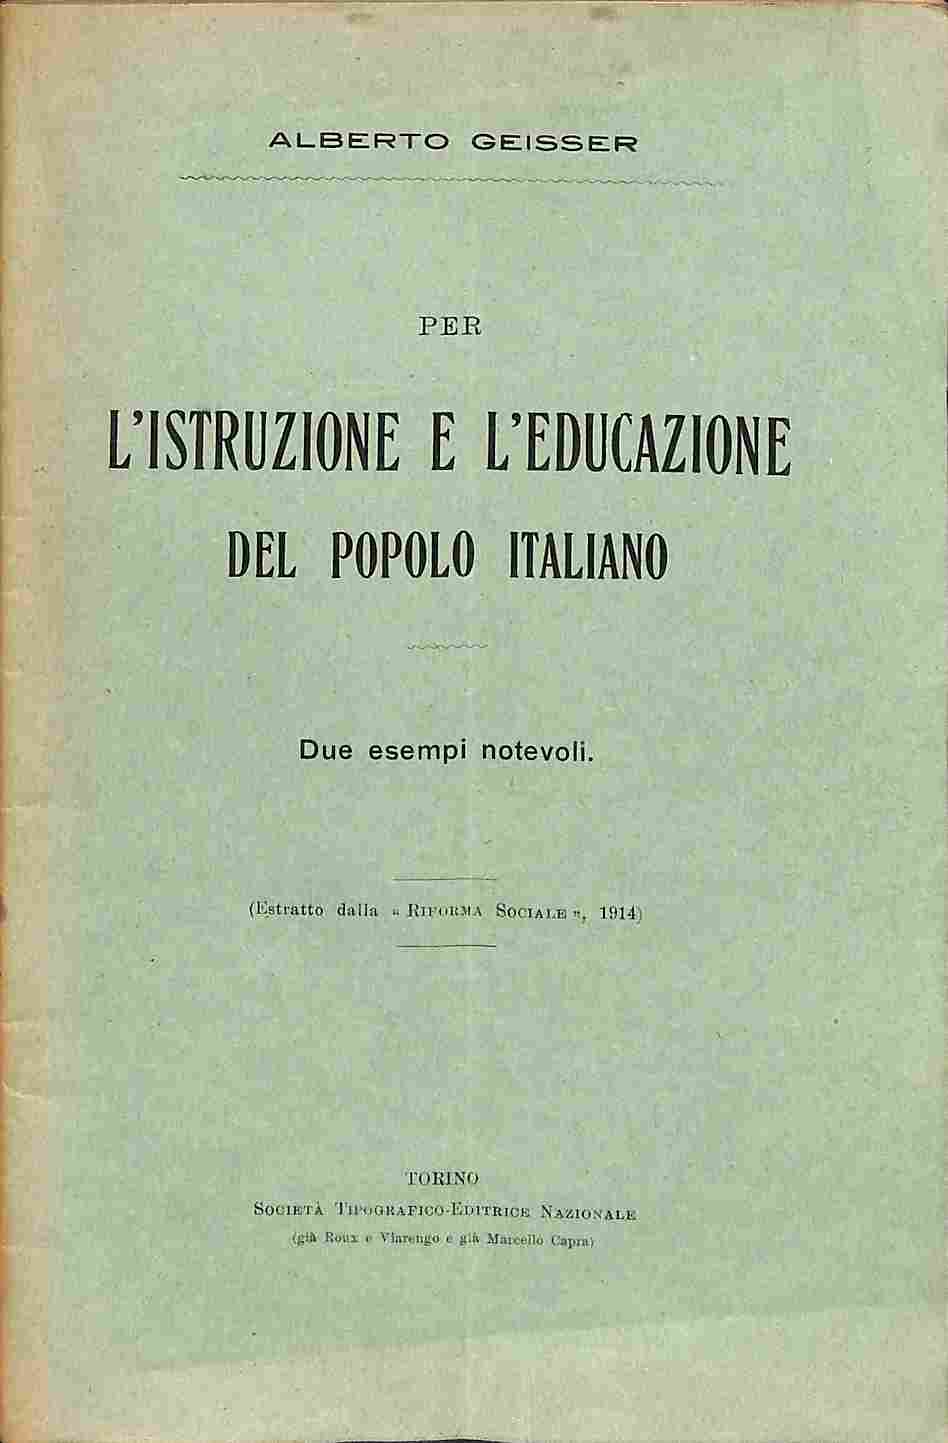 Per l'istruzione e l'educazione del popolo italiano. Due esempi notevoli